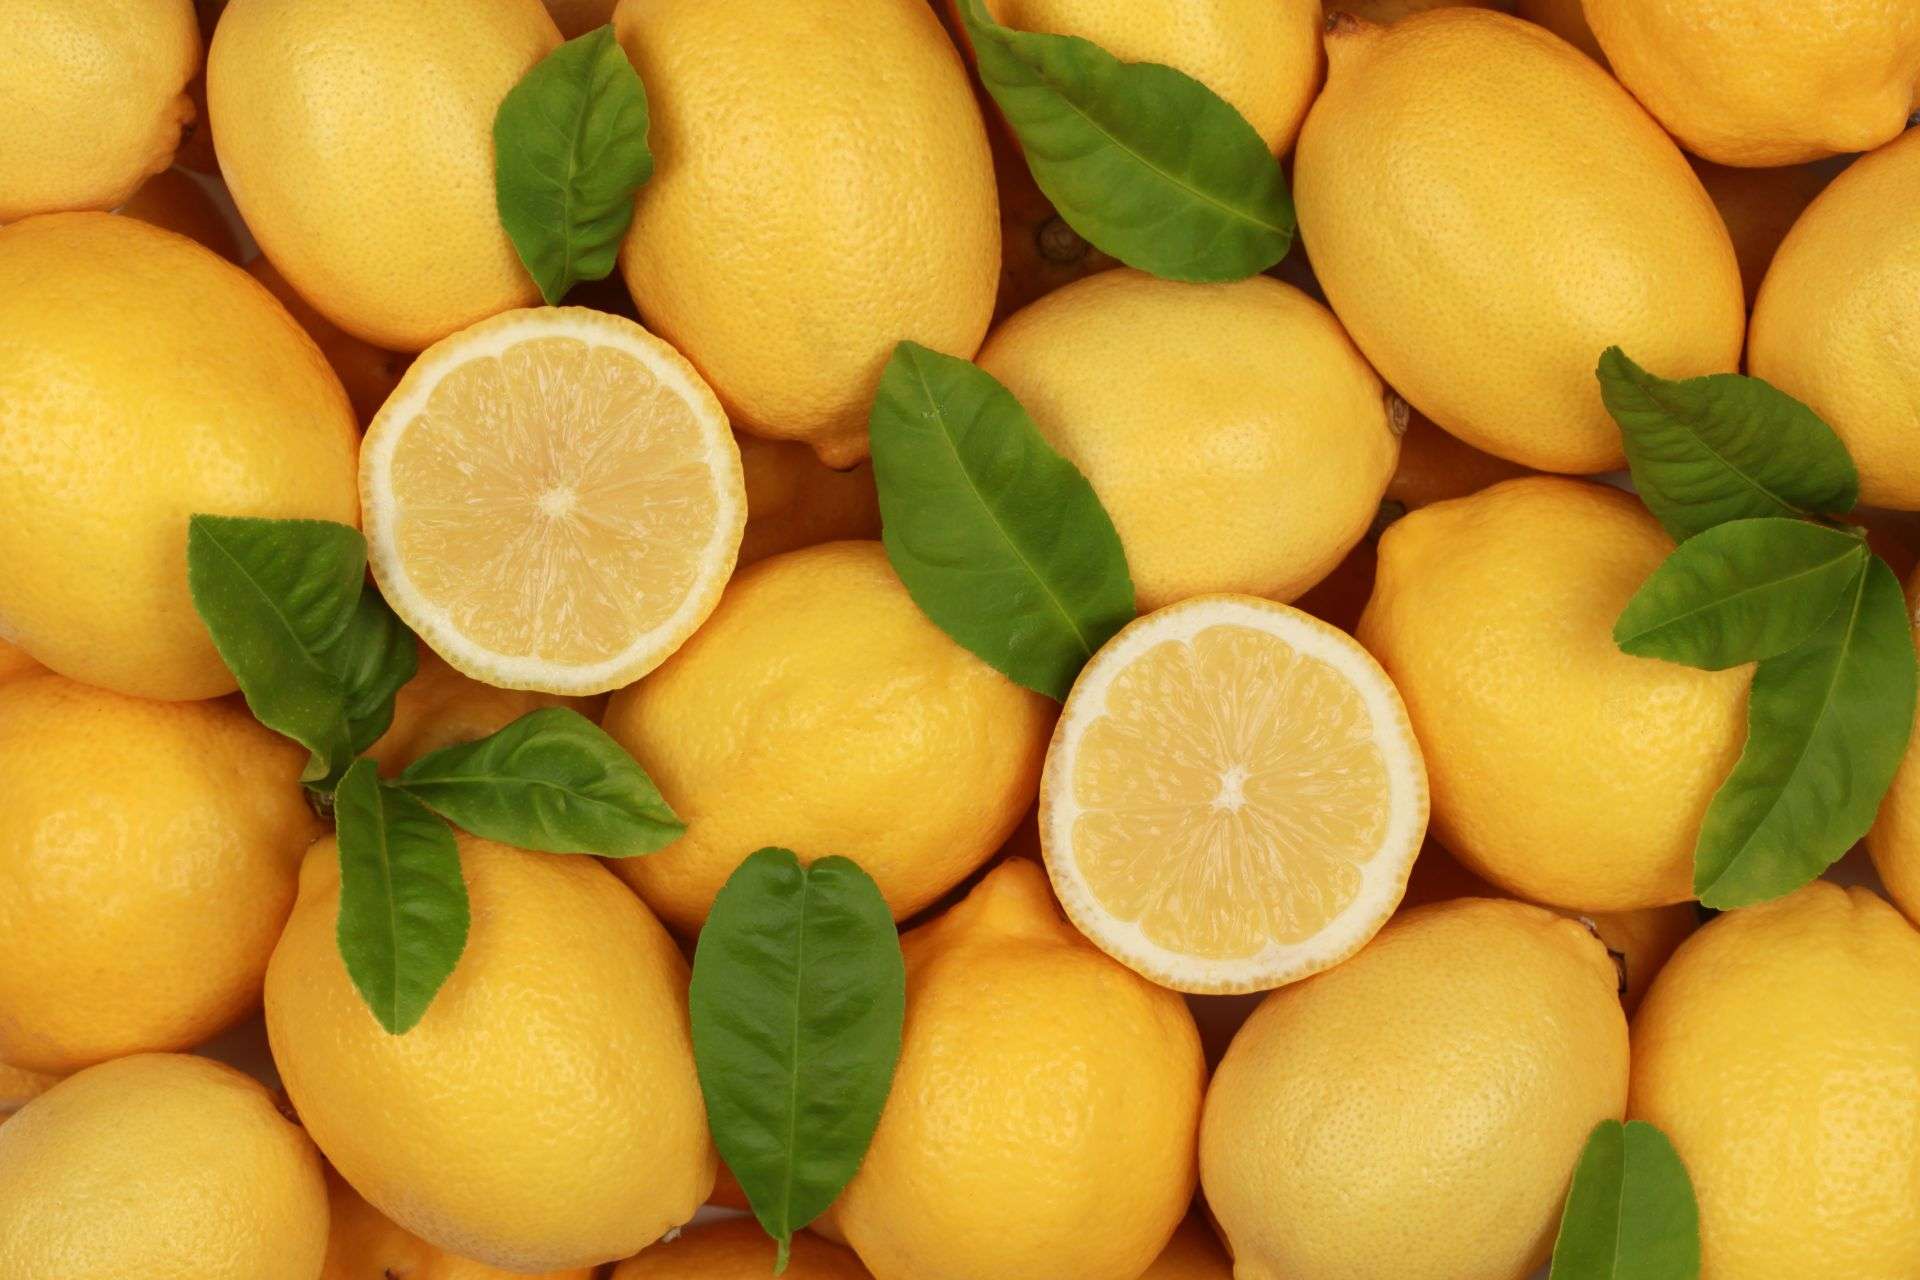 Il limone è ricco di vitamine e ha proprietà astringenti